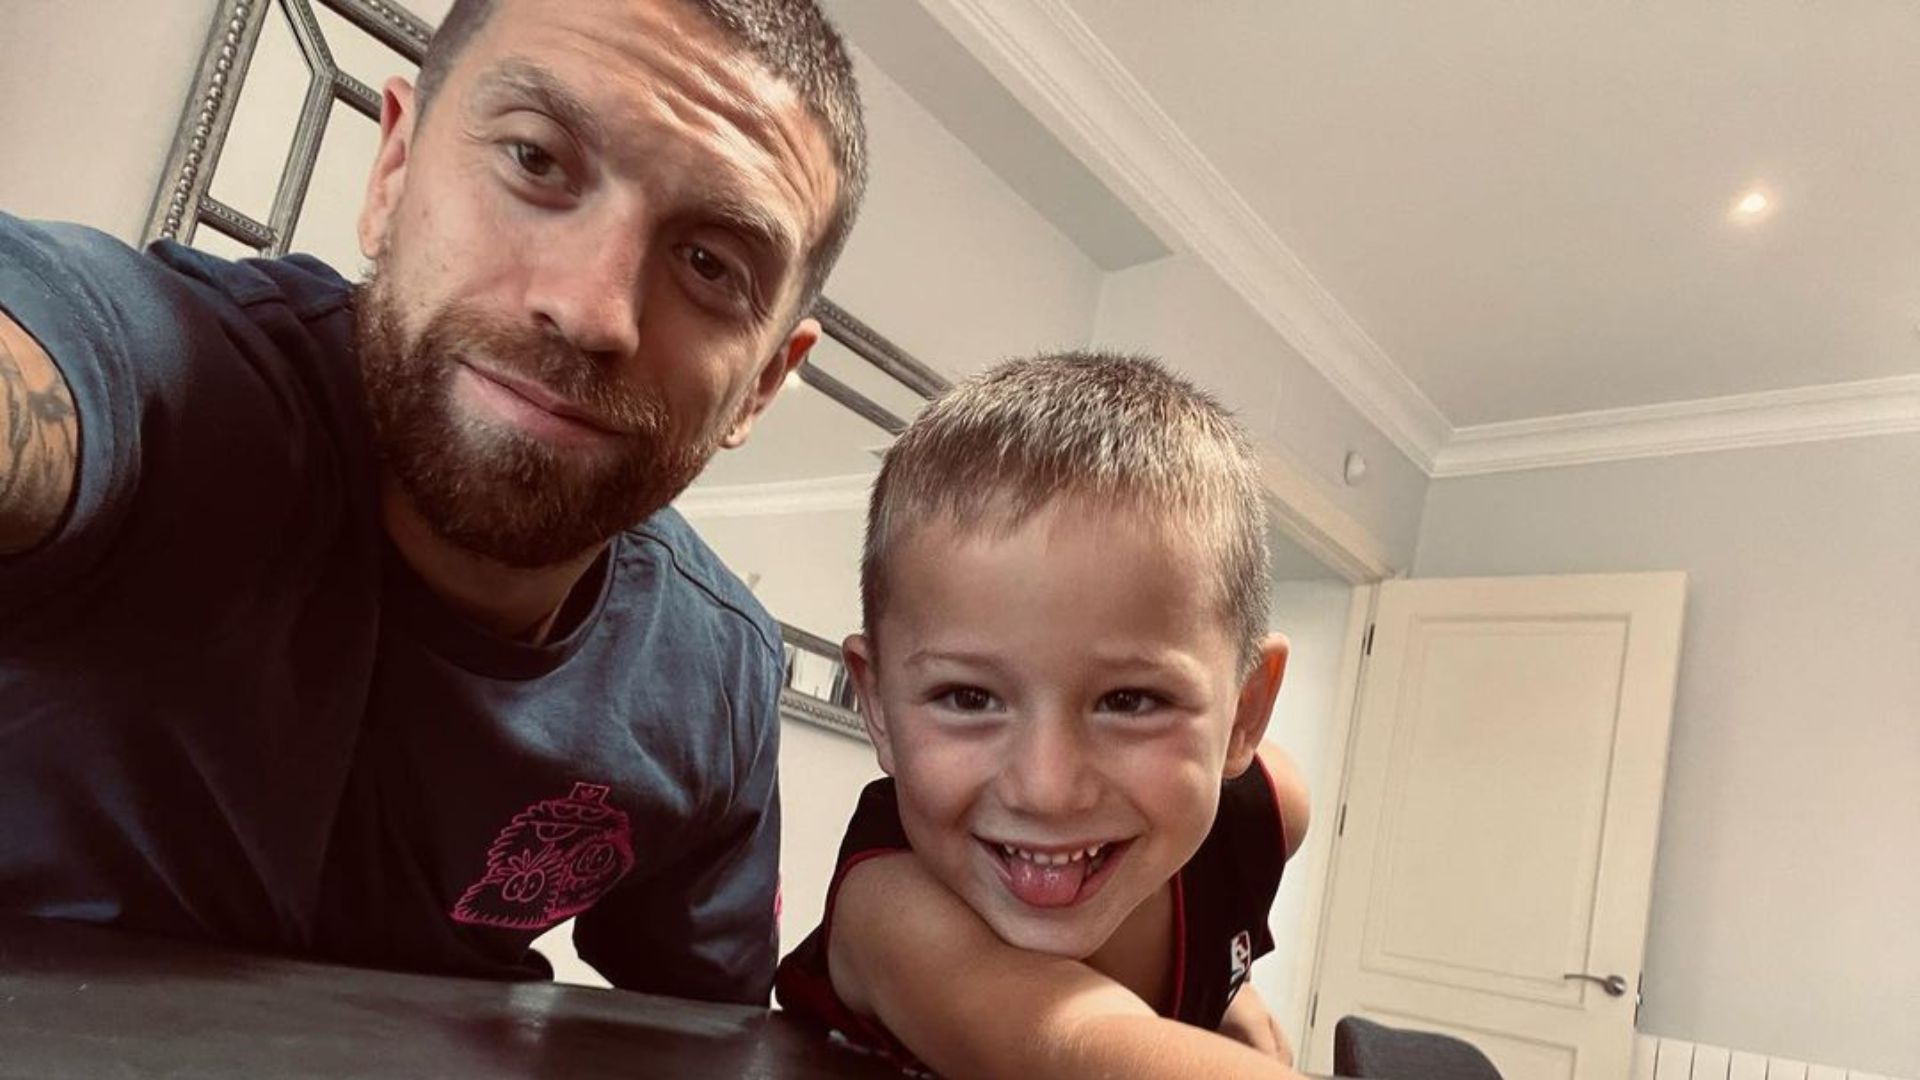 El jugador del Monza, Alejandro Gómez, junto a uno de sus hijos, de quien confesó, era el jarabe que ingirió y que le provocó la suspensión por doping positivo. (Foto Prensa Libre: Instagram)